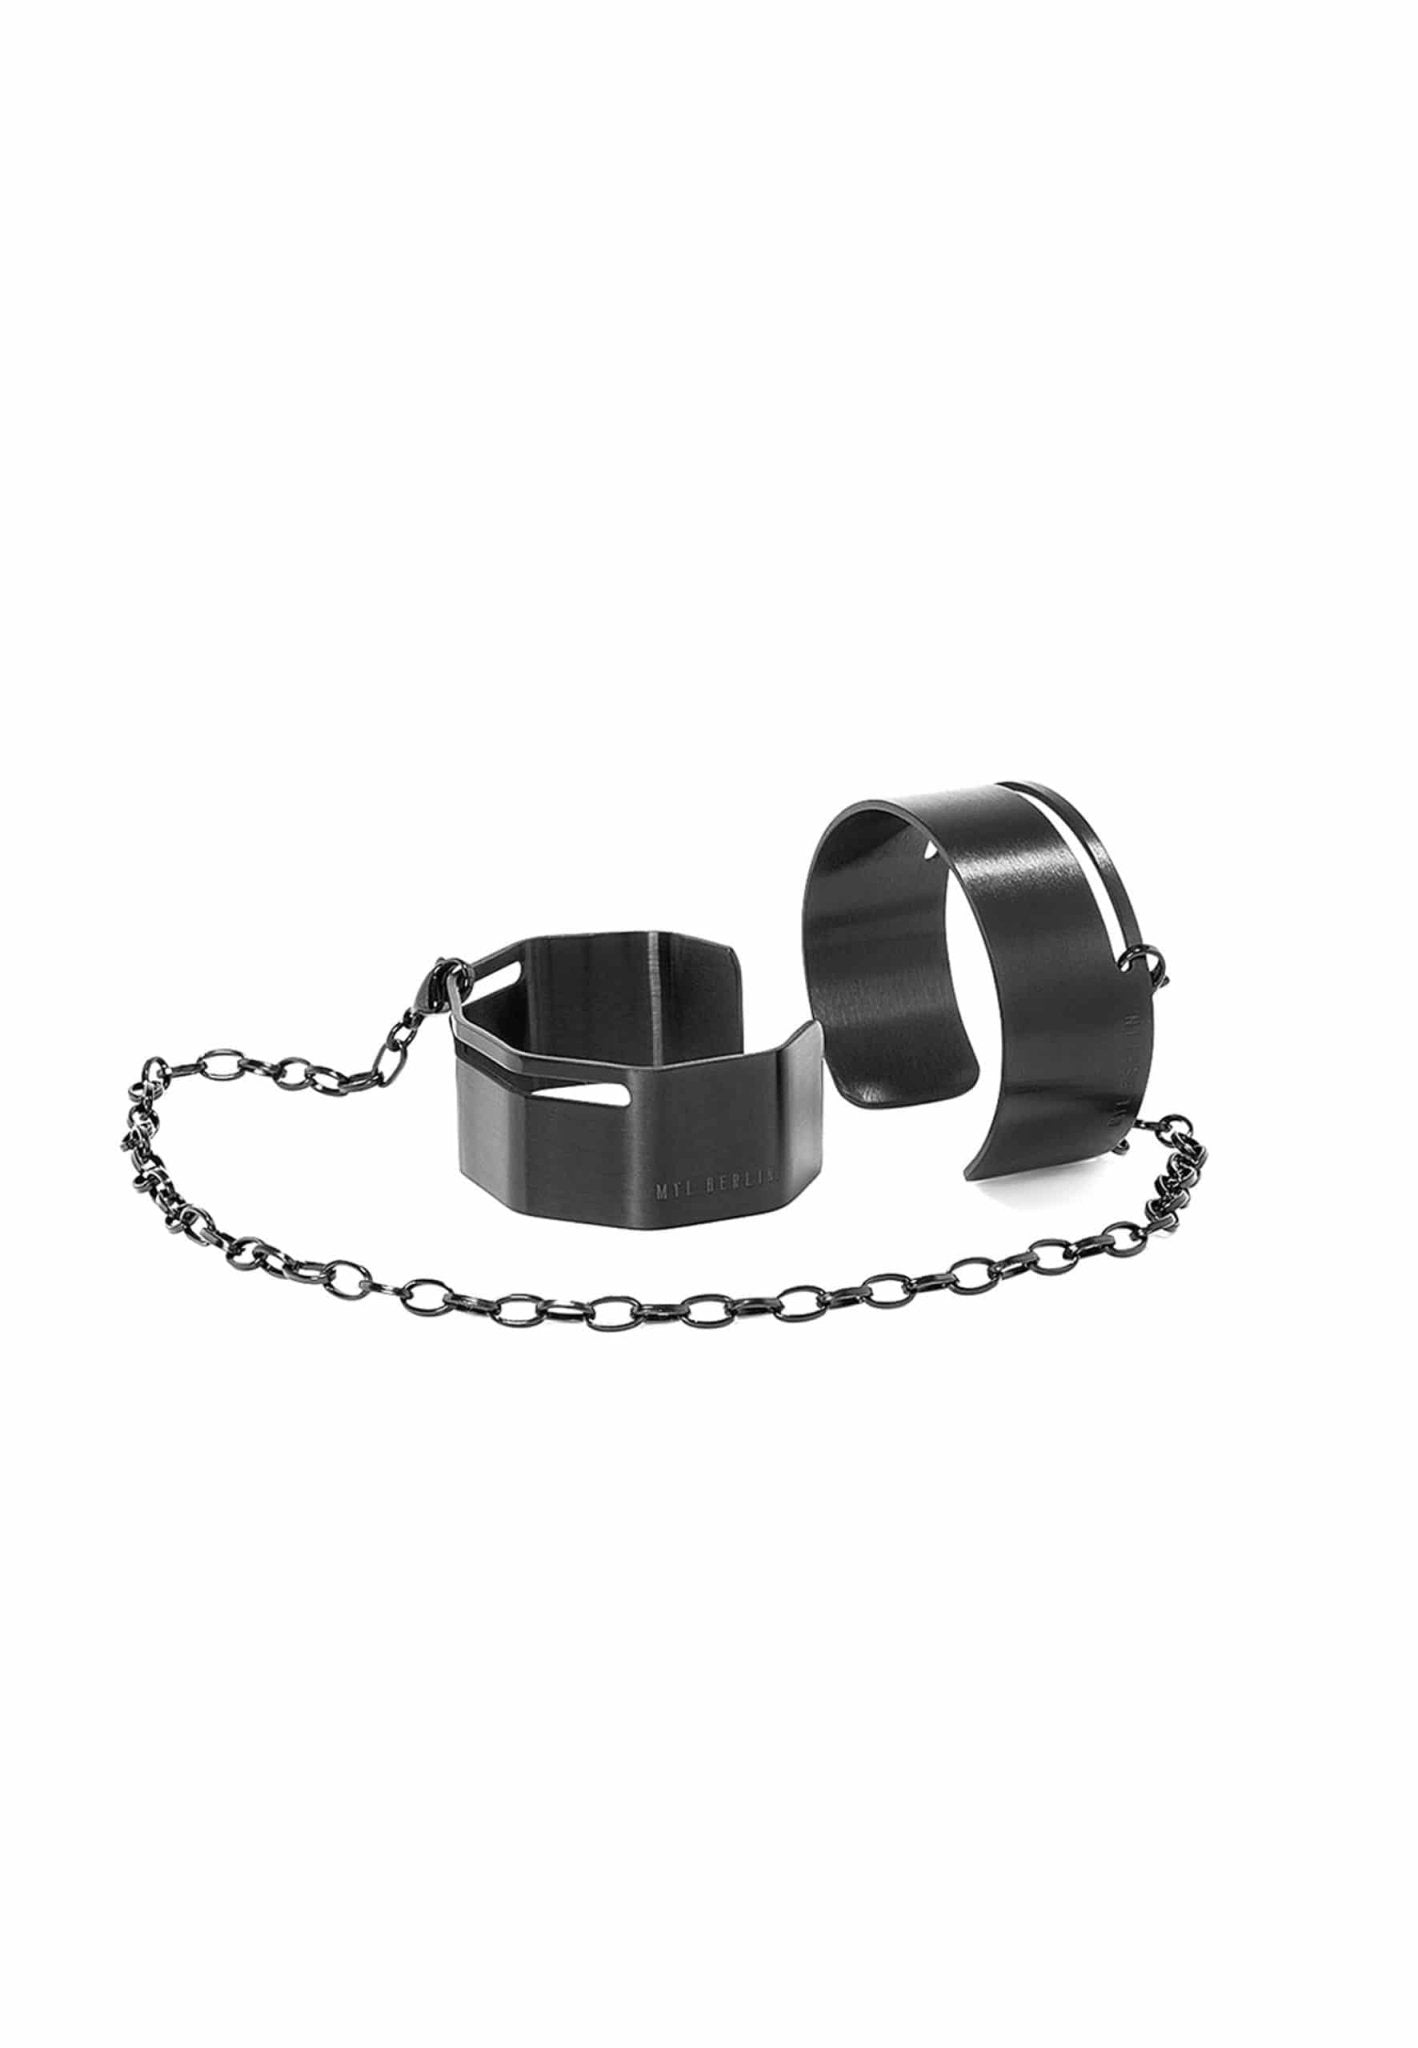 Open Cuff Bracelet Set with Chain "Handcuff Bracelets" - MYL BERLIN - 4260654110258 - 4260654110258